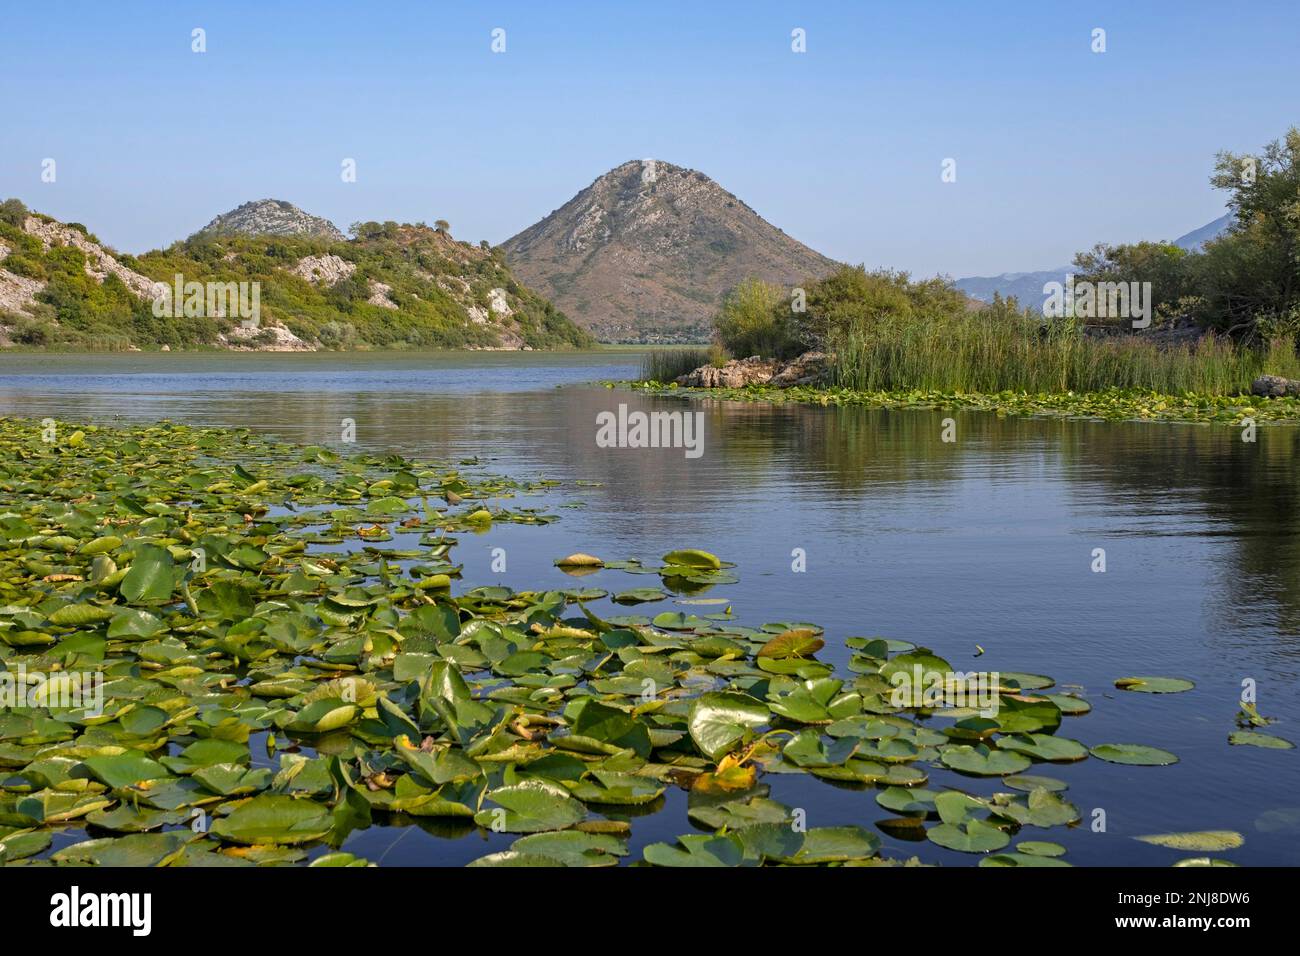 Waterlily / waterlily leaves in Skadar Lake / Lake Scutari / Lake Shkodër, Skadarsko Jezero National Park, Crmnica region, Bar, Montenegro Stock Photo